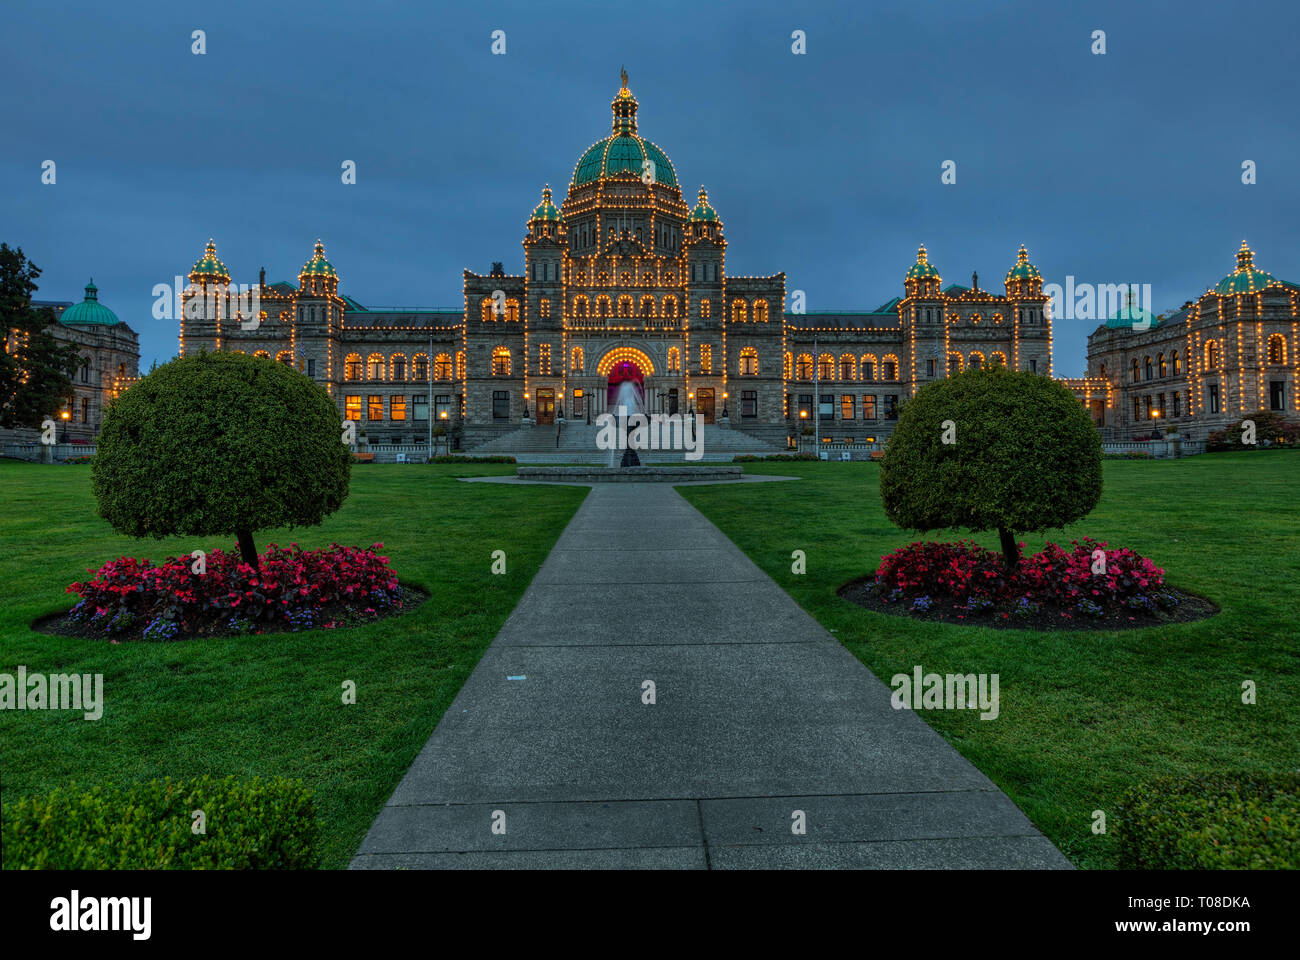 La British Columbia gli edifici del Parlamento europeo sono senza dubbio il fulcro della città di Victoria. Il neo-barocco che definisce lo stile Foto Stock